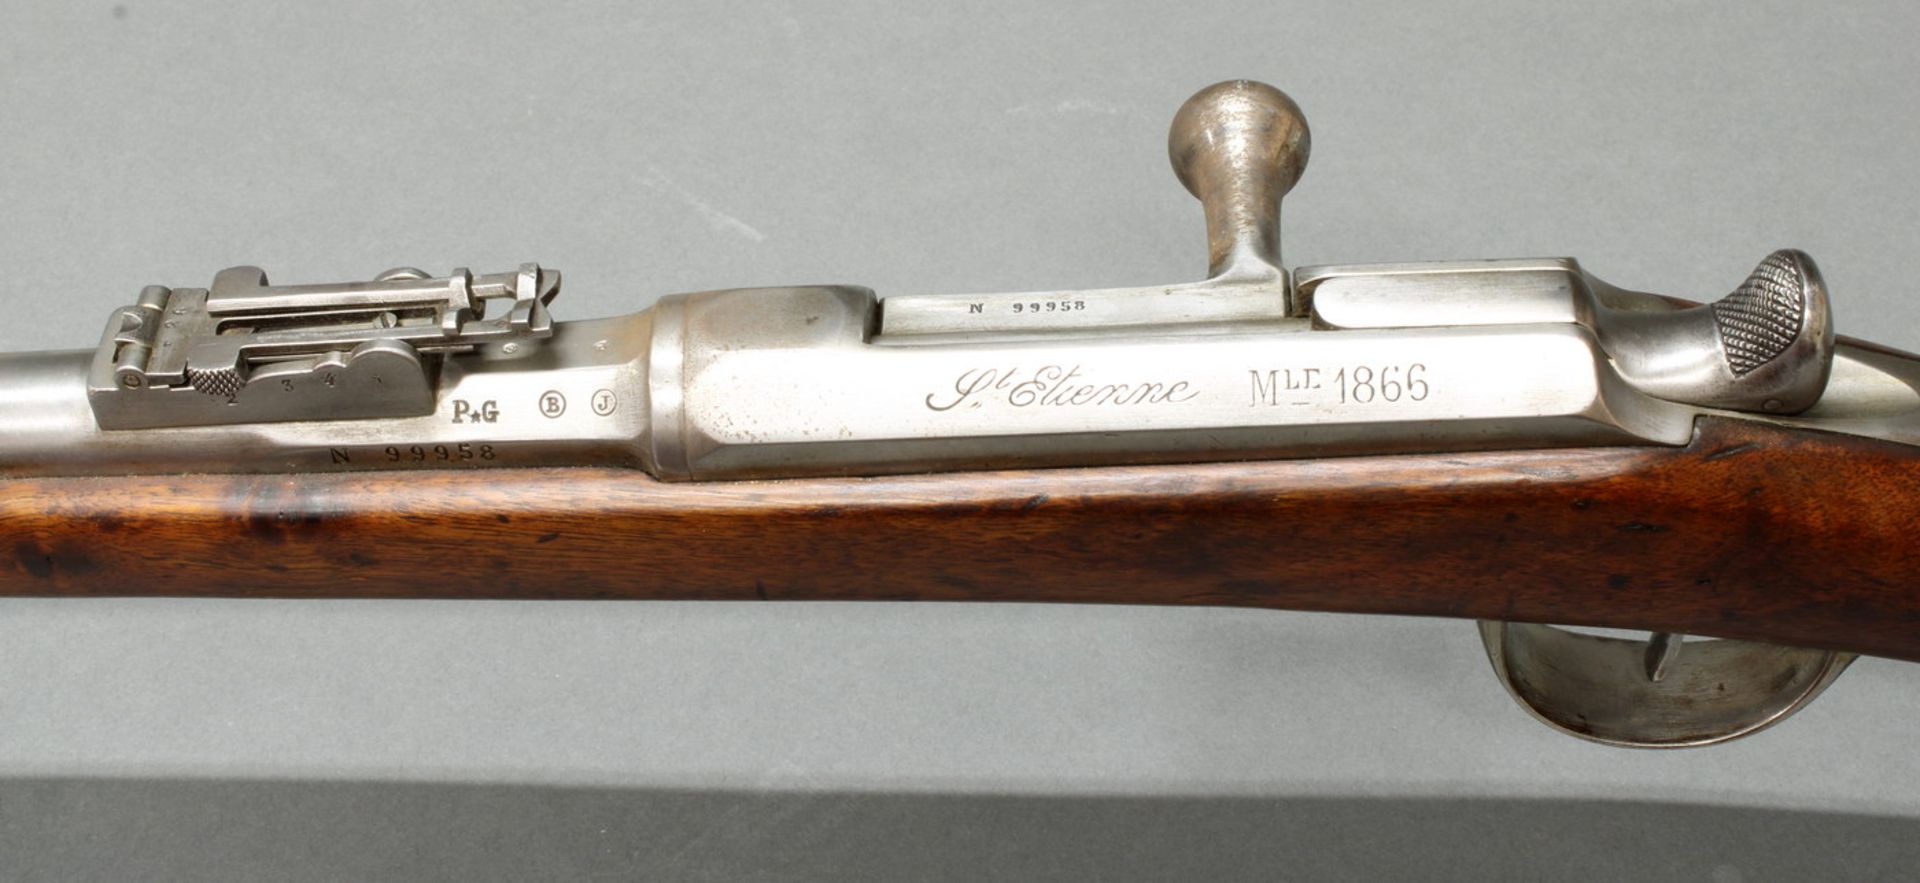 Chassepot-Gewehr, mit Jatagan-Bajonett in Metallscheide, Frankreich, St. Etienne, 1866, - Bild 6 aus 7